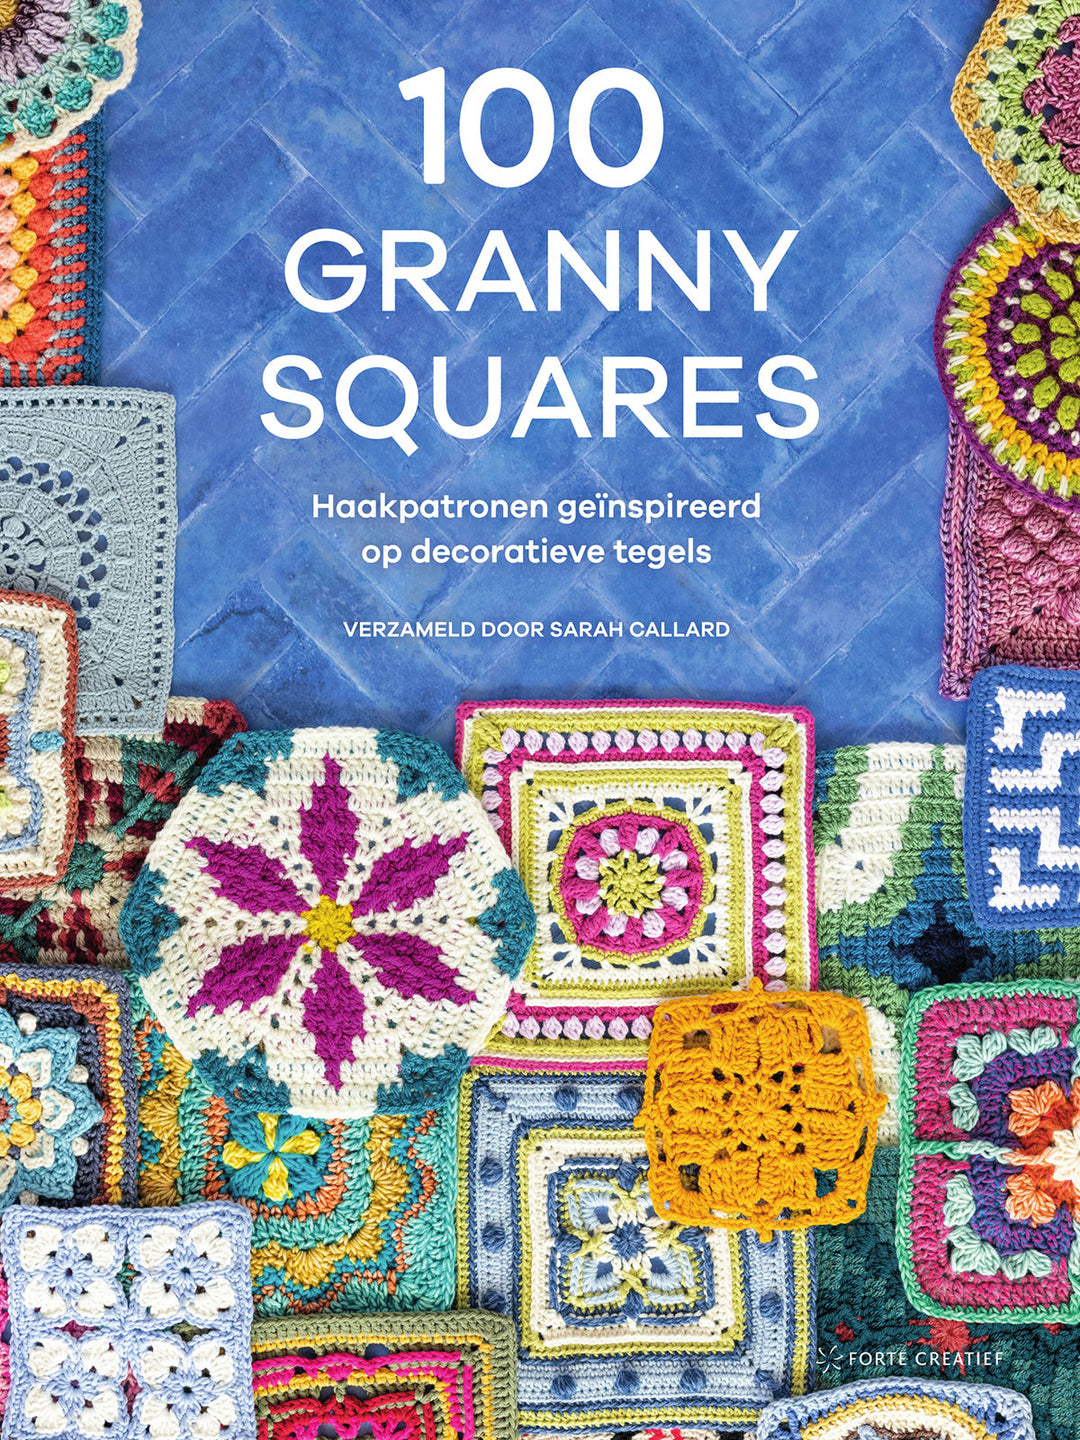 100 Granny squares